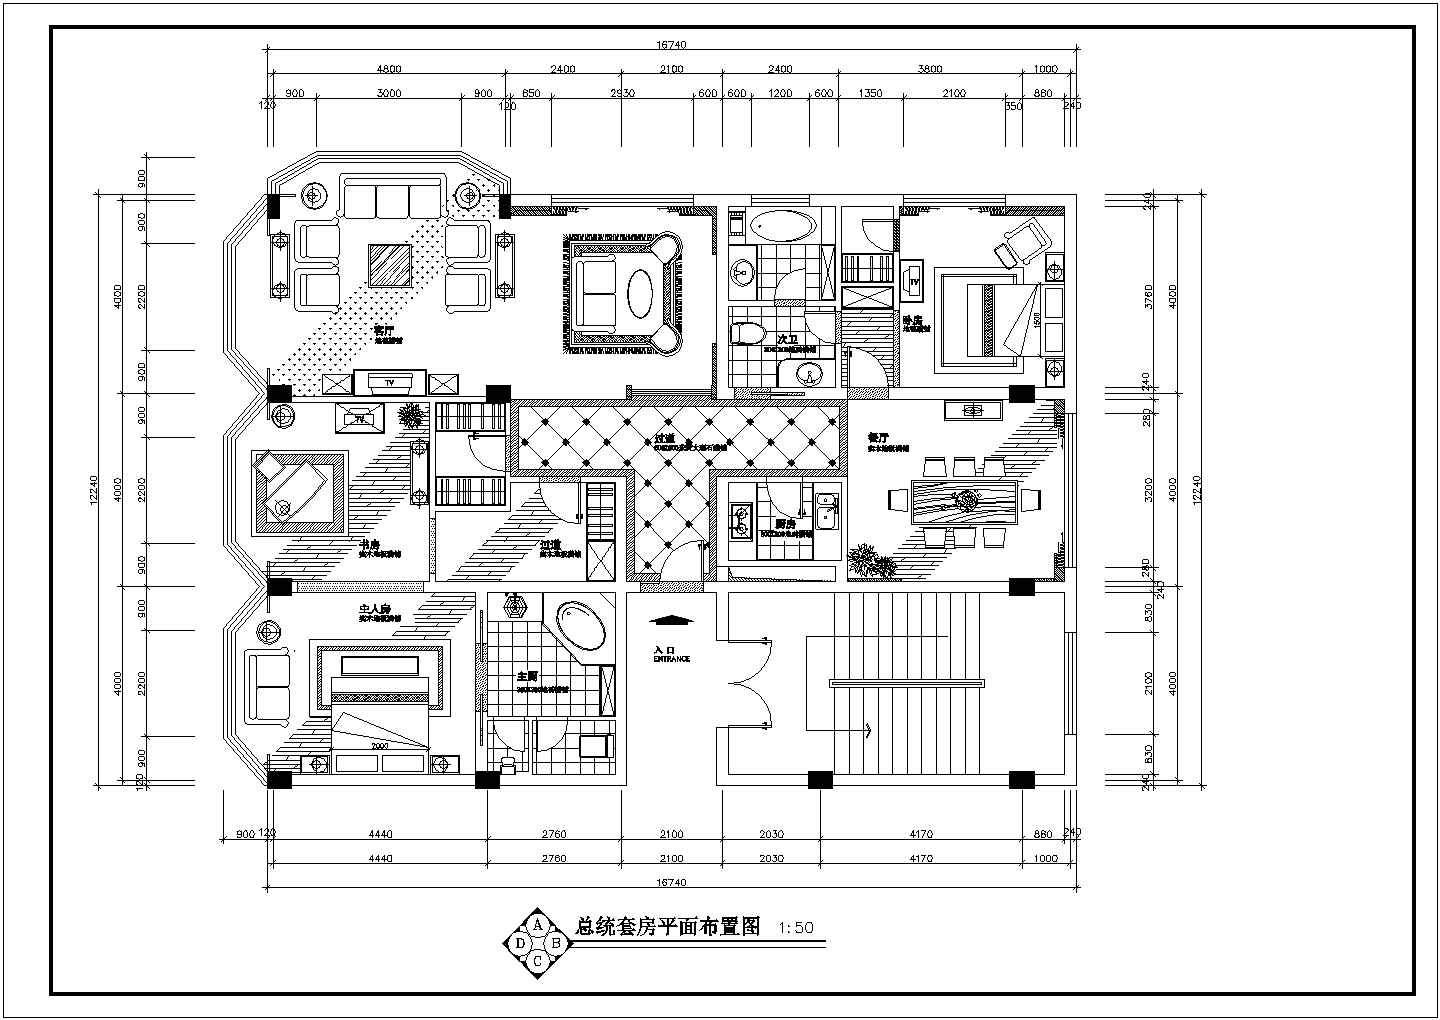 【太原】某高级酒店套房装修设计施工图纸